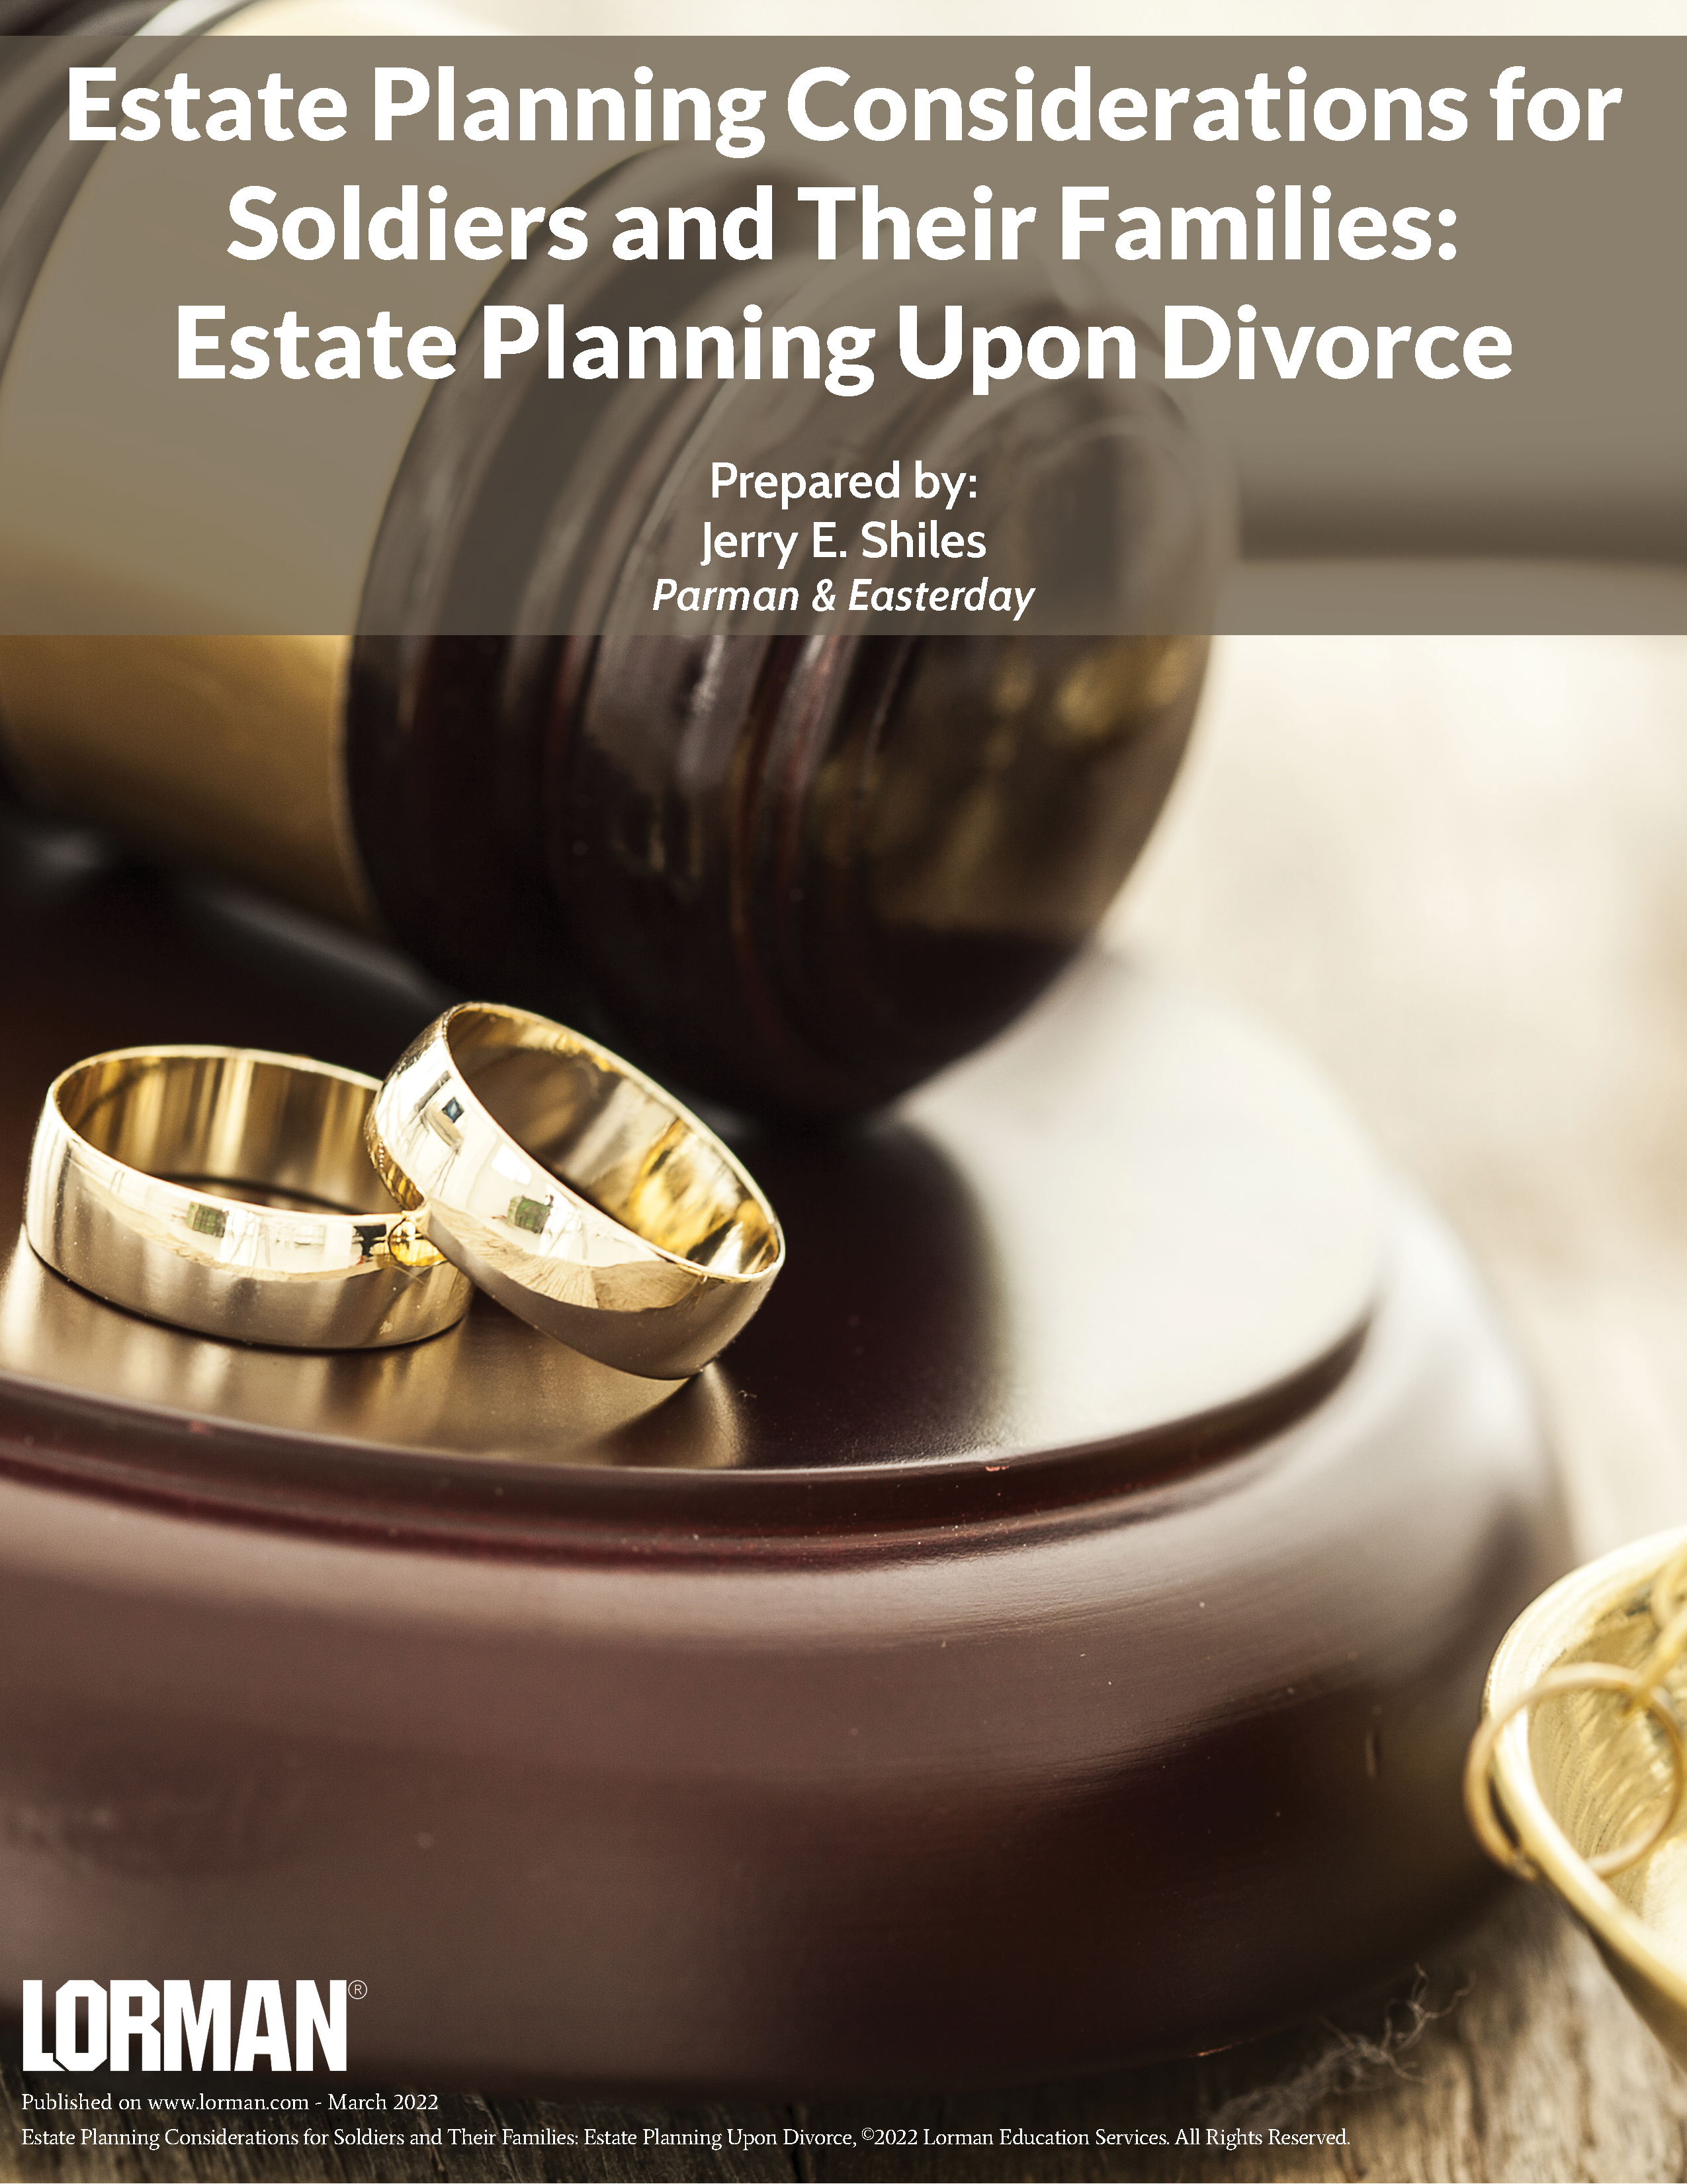 Estate Planning Upon Divorce